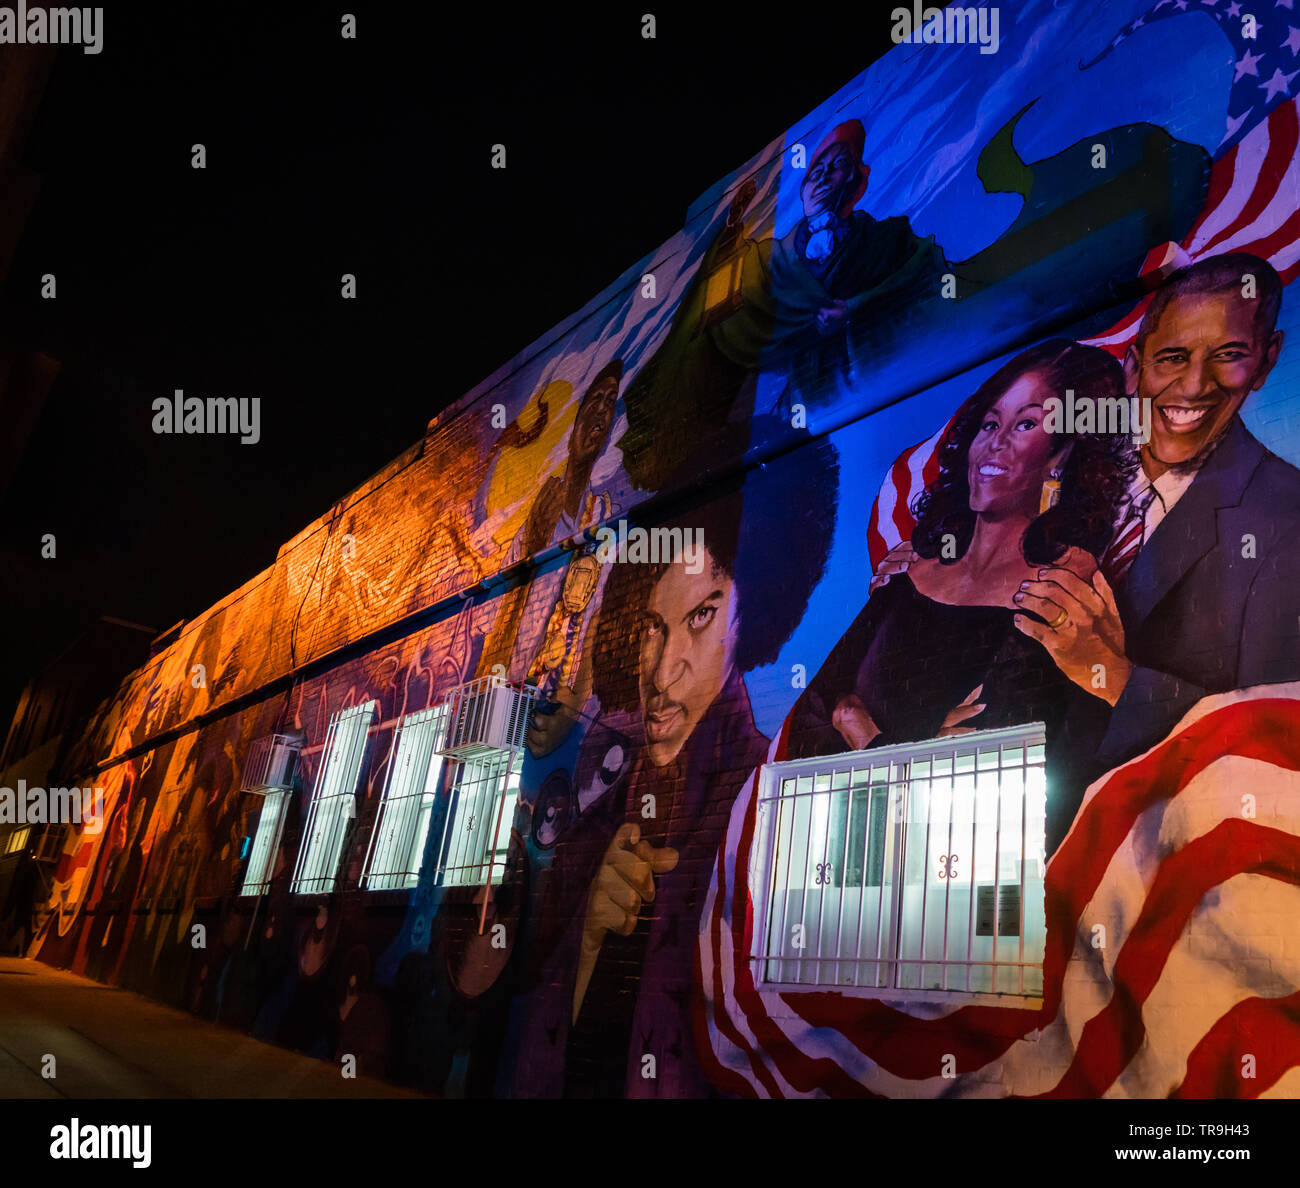 Aggiornato al murale Ben's Chili ciotola in Washington, DC, Stati Uniti d'America con il principe e il Obama è aggiunto e Bill Cosby rimosso. Foto Stock